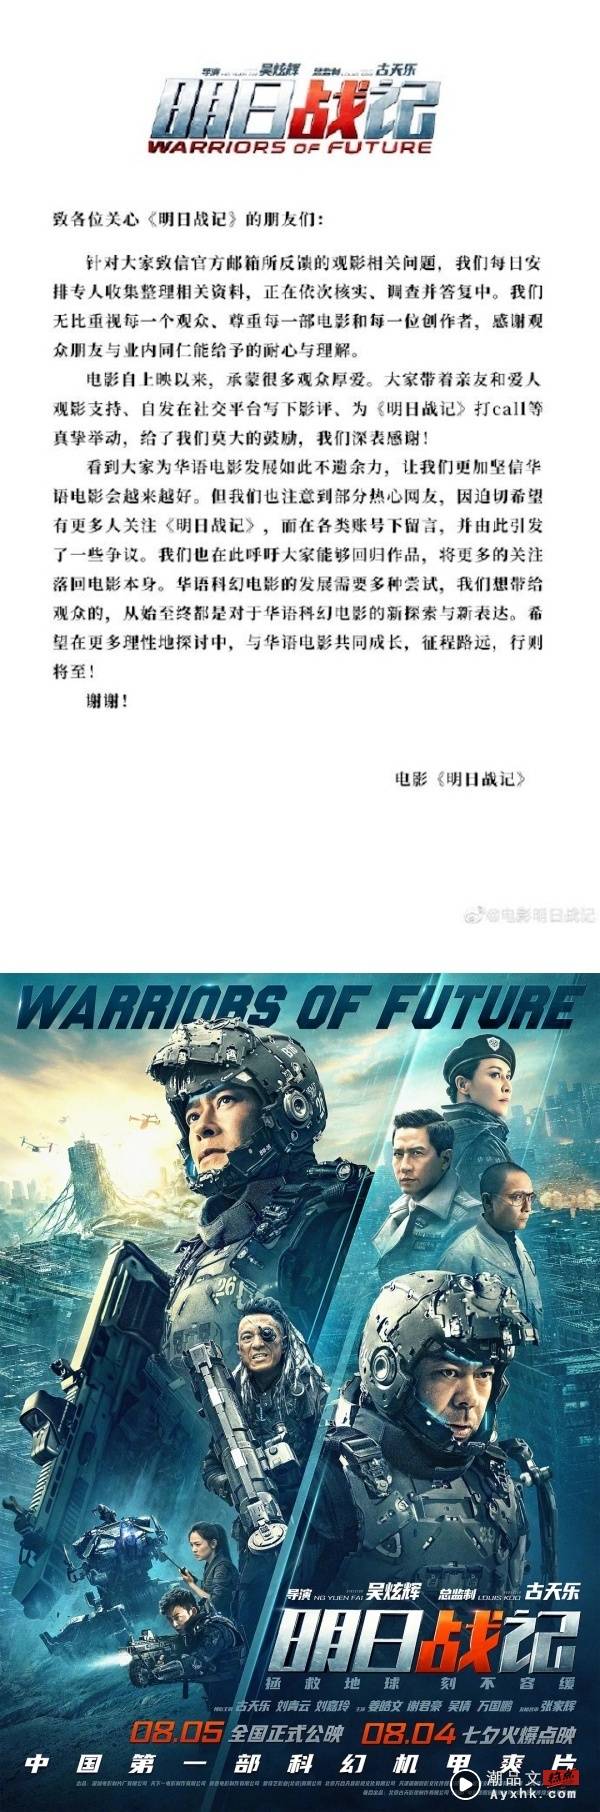 网求刘德华宣传古天乐电影...引争议！官方发声明 娱乐资讯 图2张